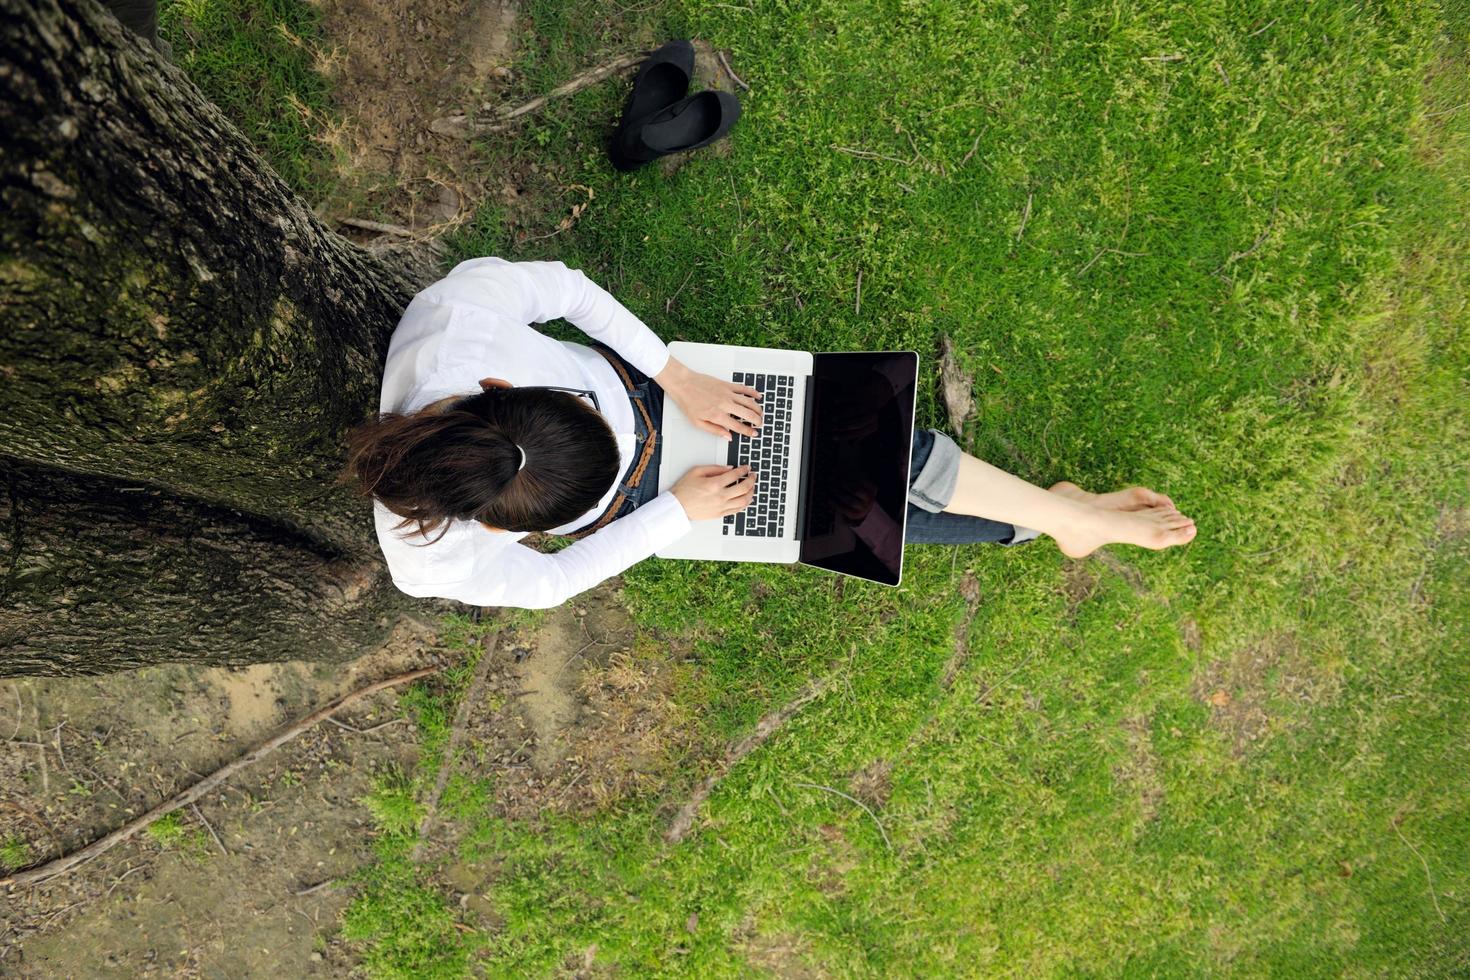 femme avec ordinateur portable dans le parc photo